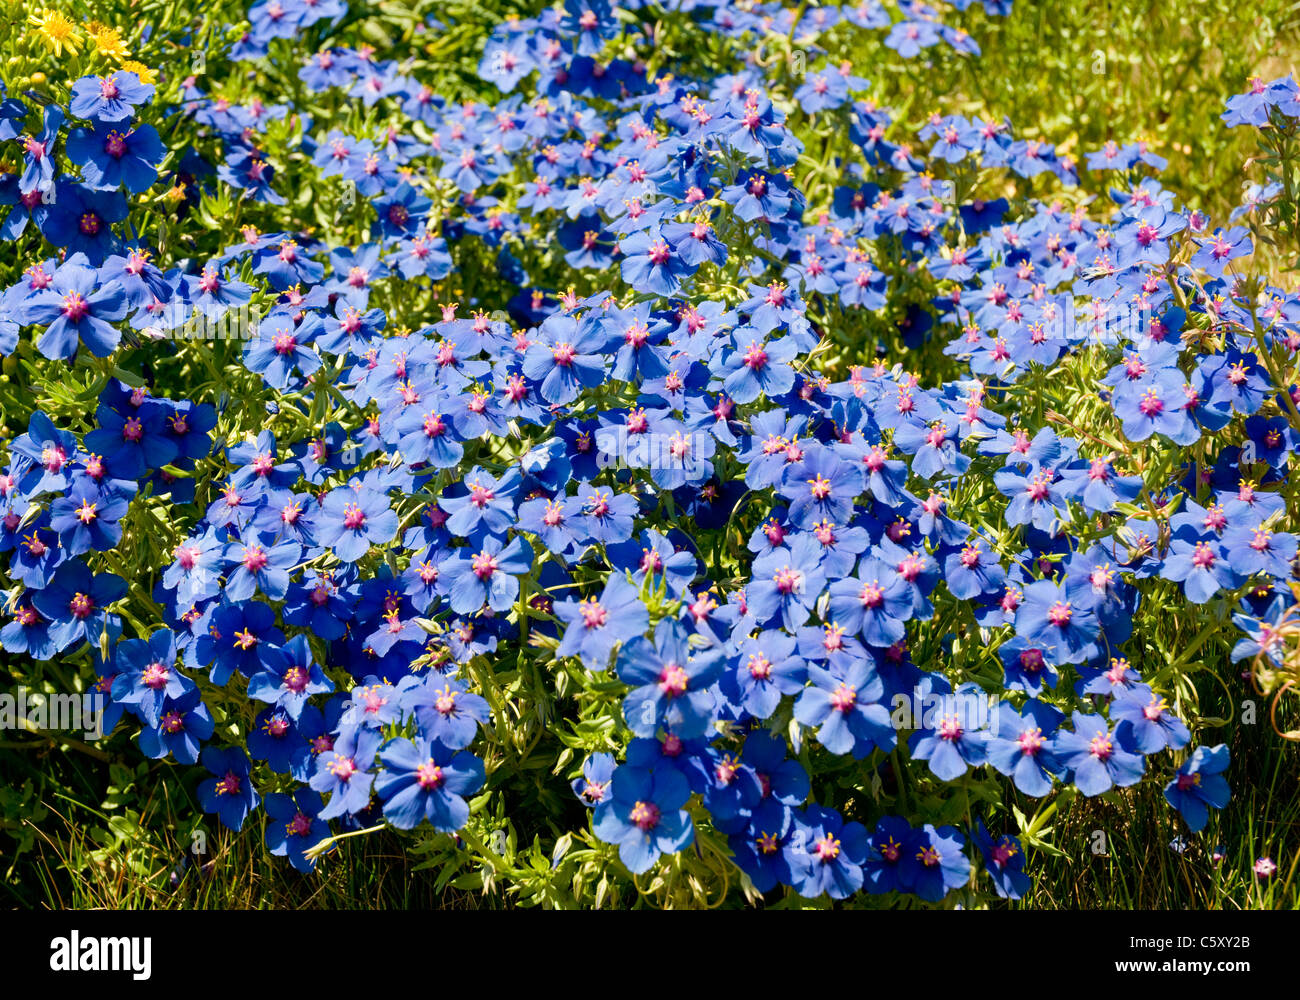 Un letto di fiori con petali di colore blu e rosa gli stimmi crescente selvatici in Algarve, Portogallo meridionale. Foto Stock